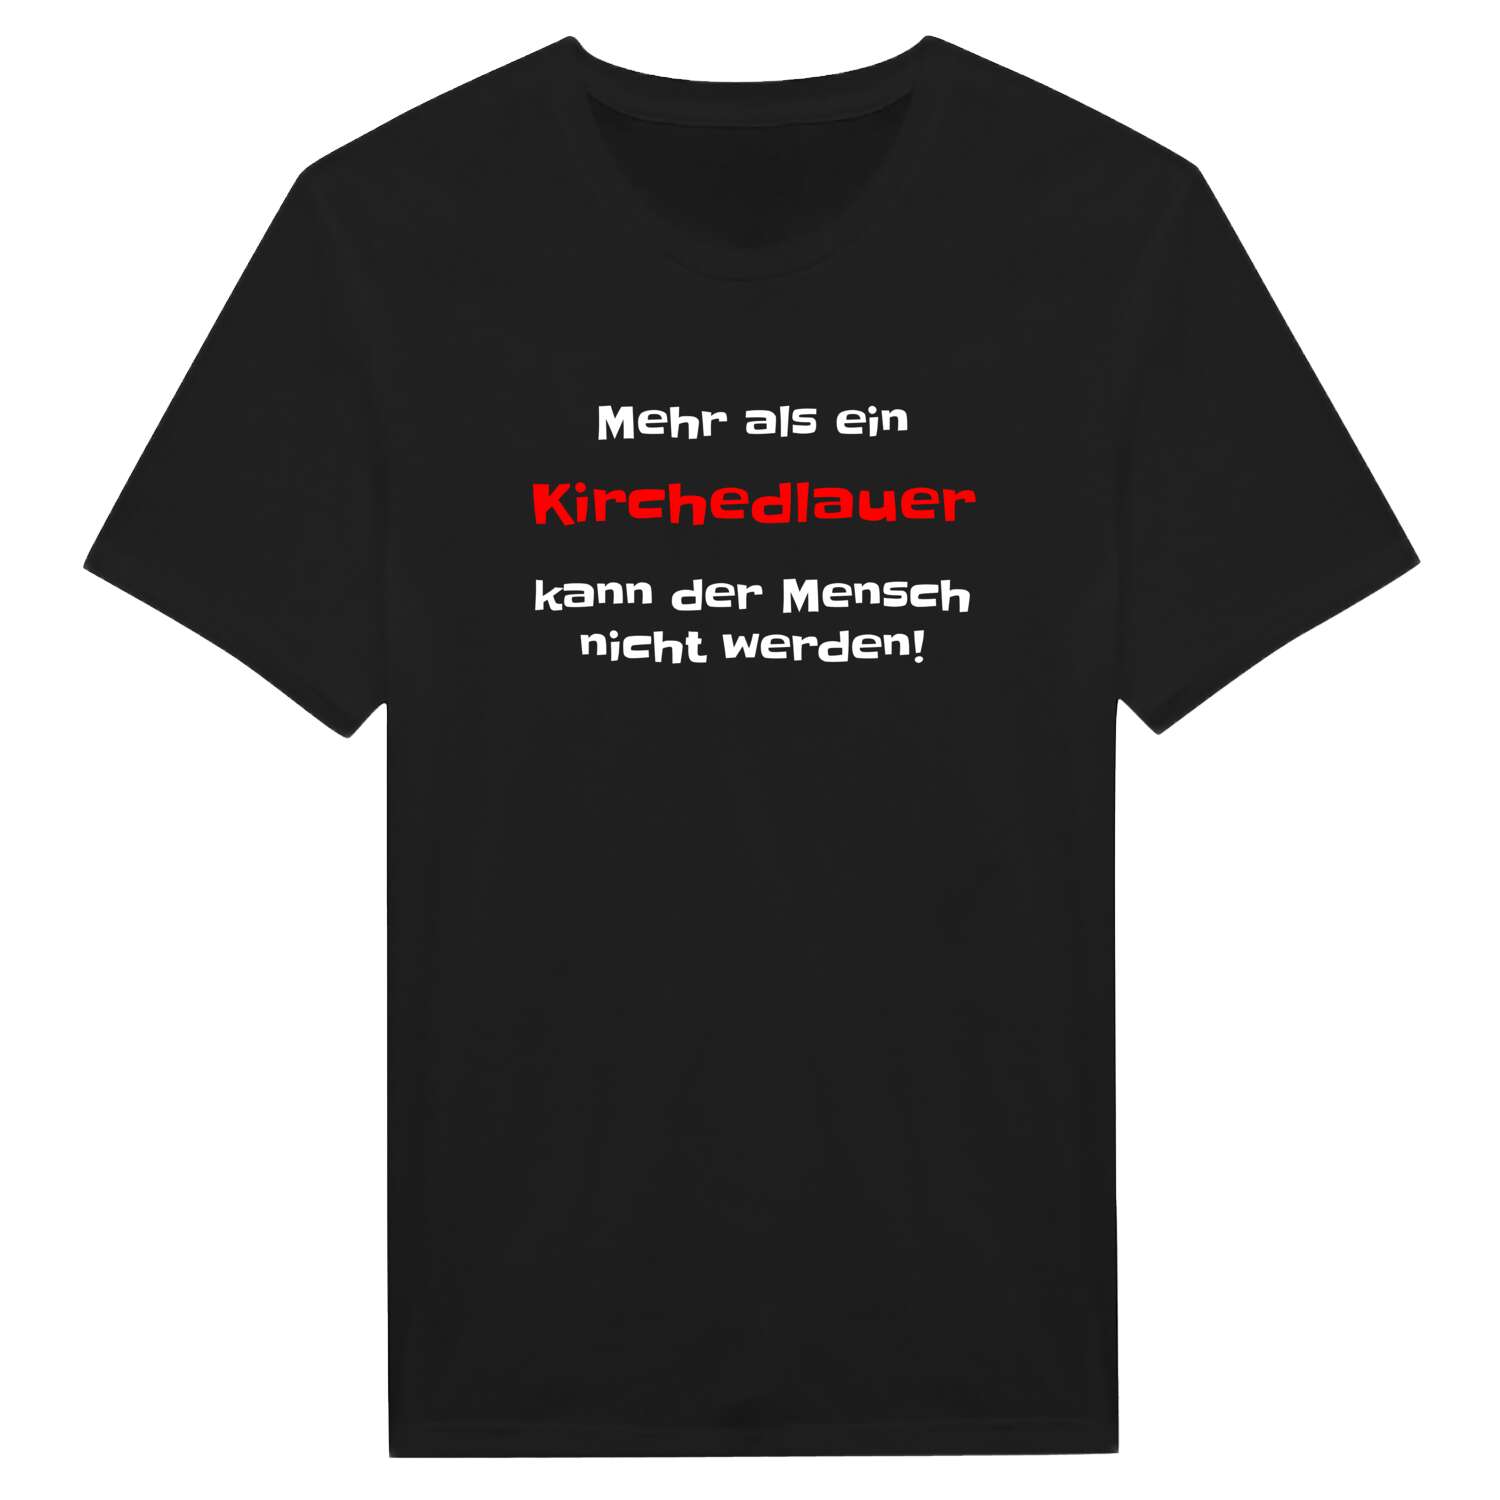 Kirchedlau T-Shirt »Mehr als ein«